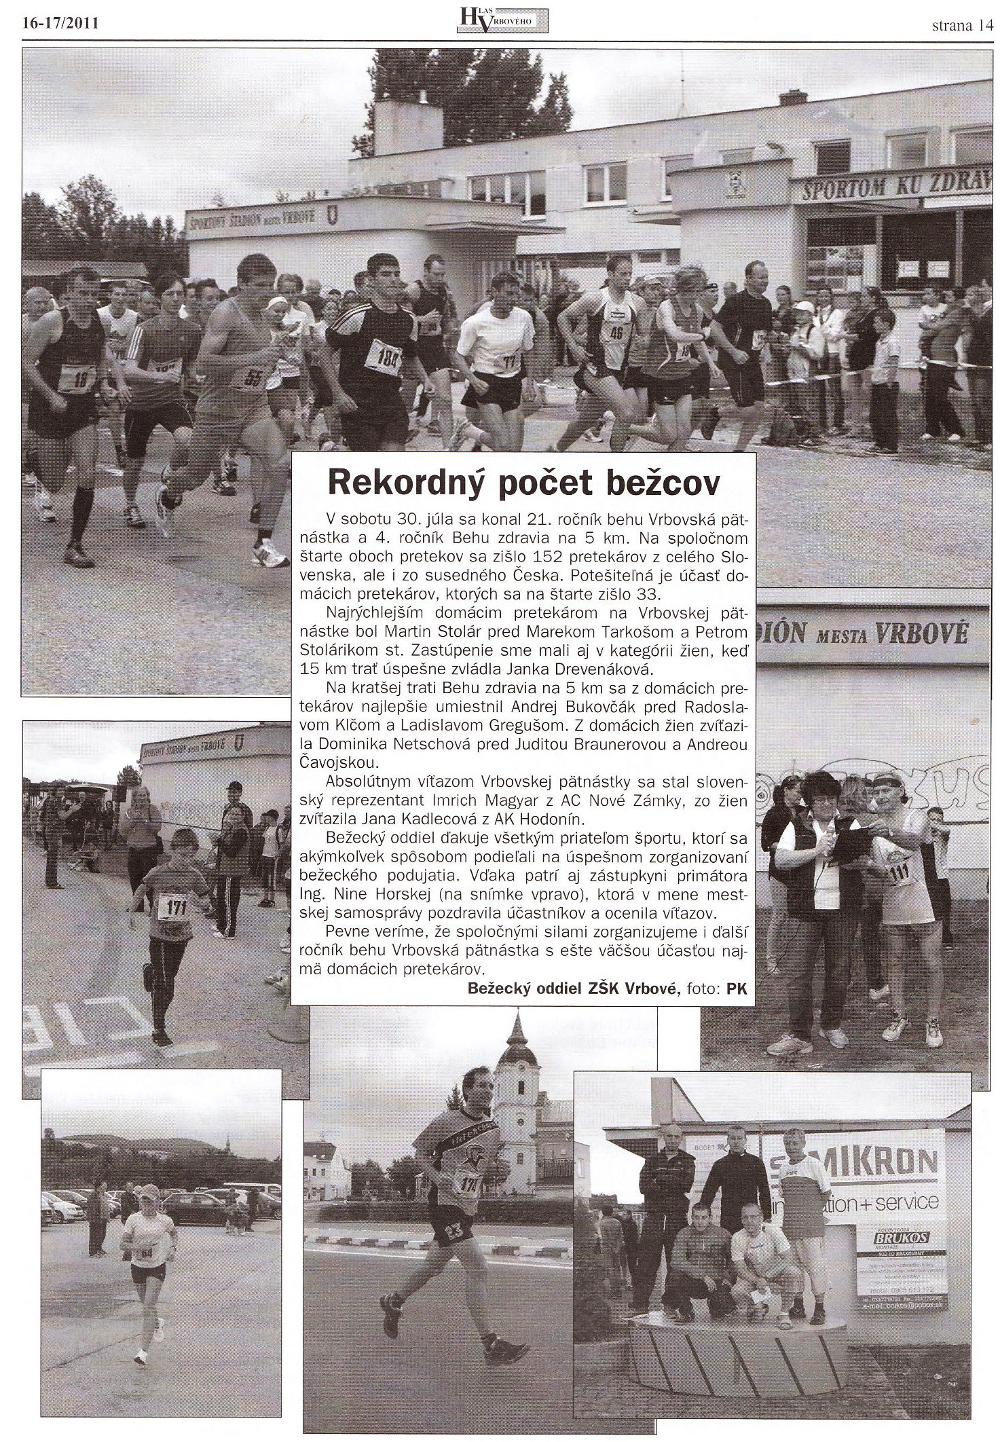 Hlas Vrbového 16-17/2011, strana 14